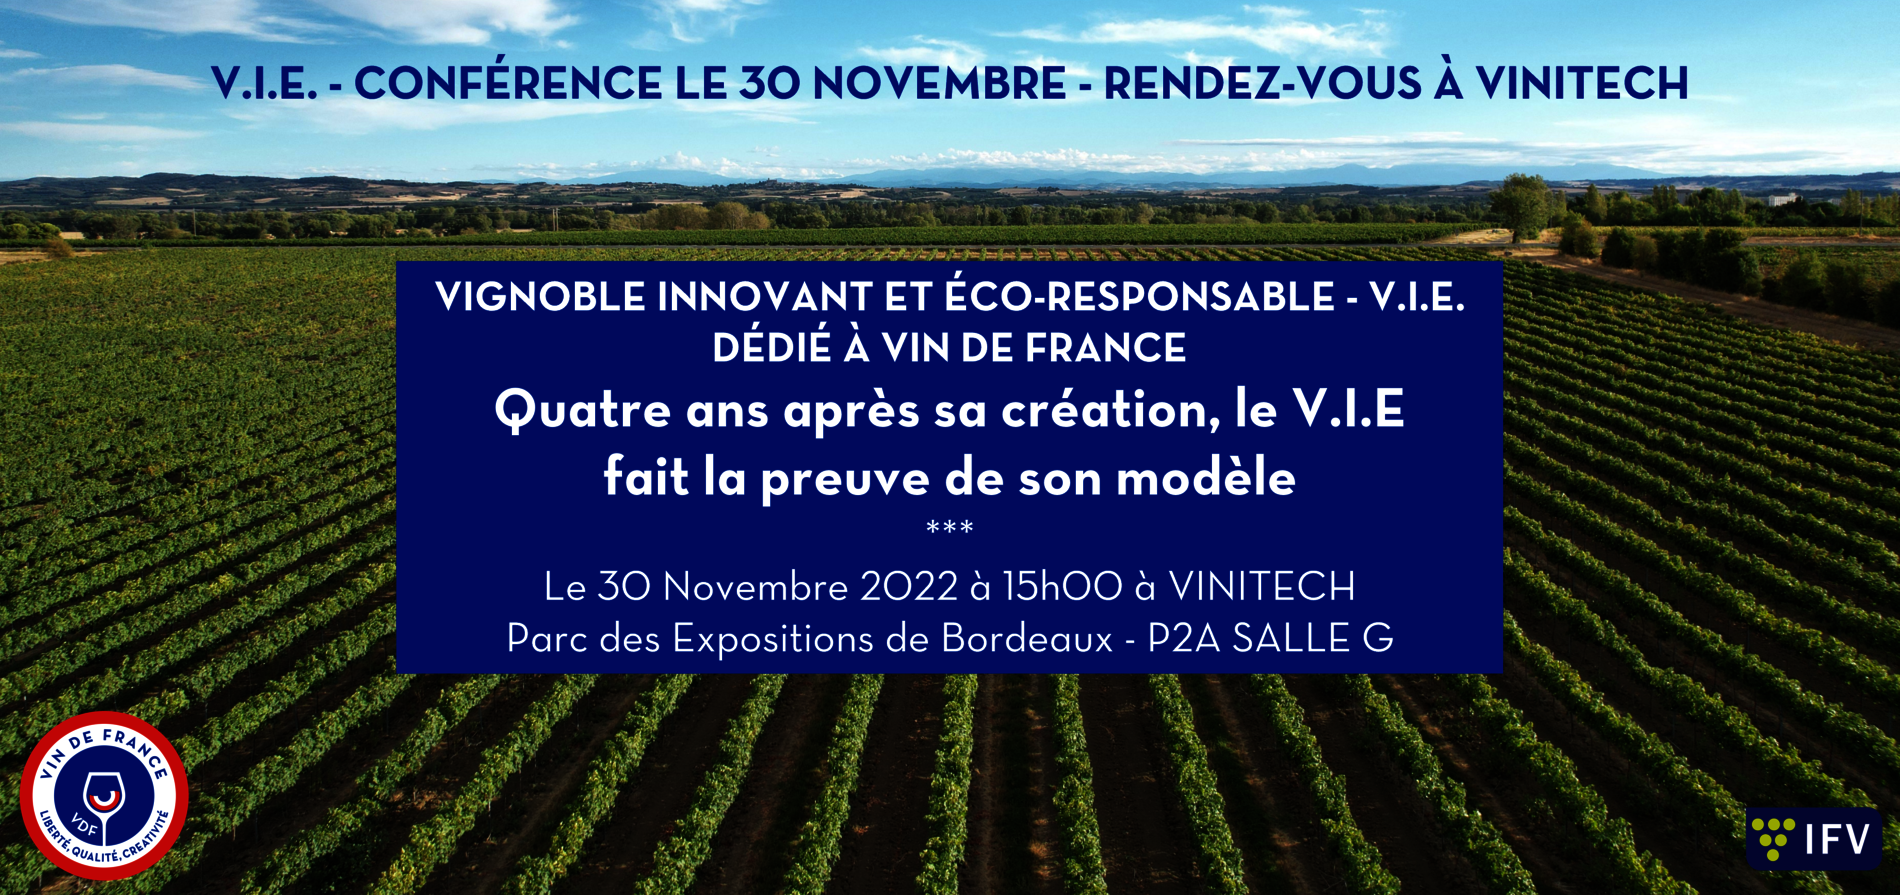 Conférence V.I.E. à Vinitech le 30 novembre 2022